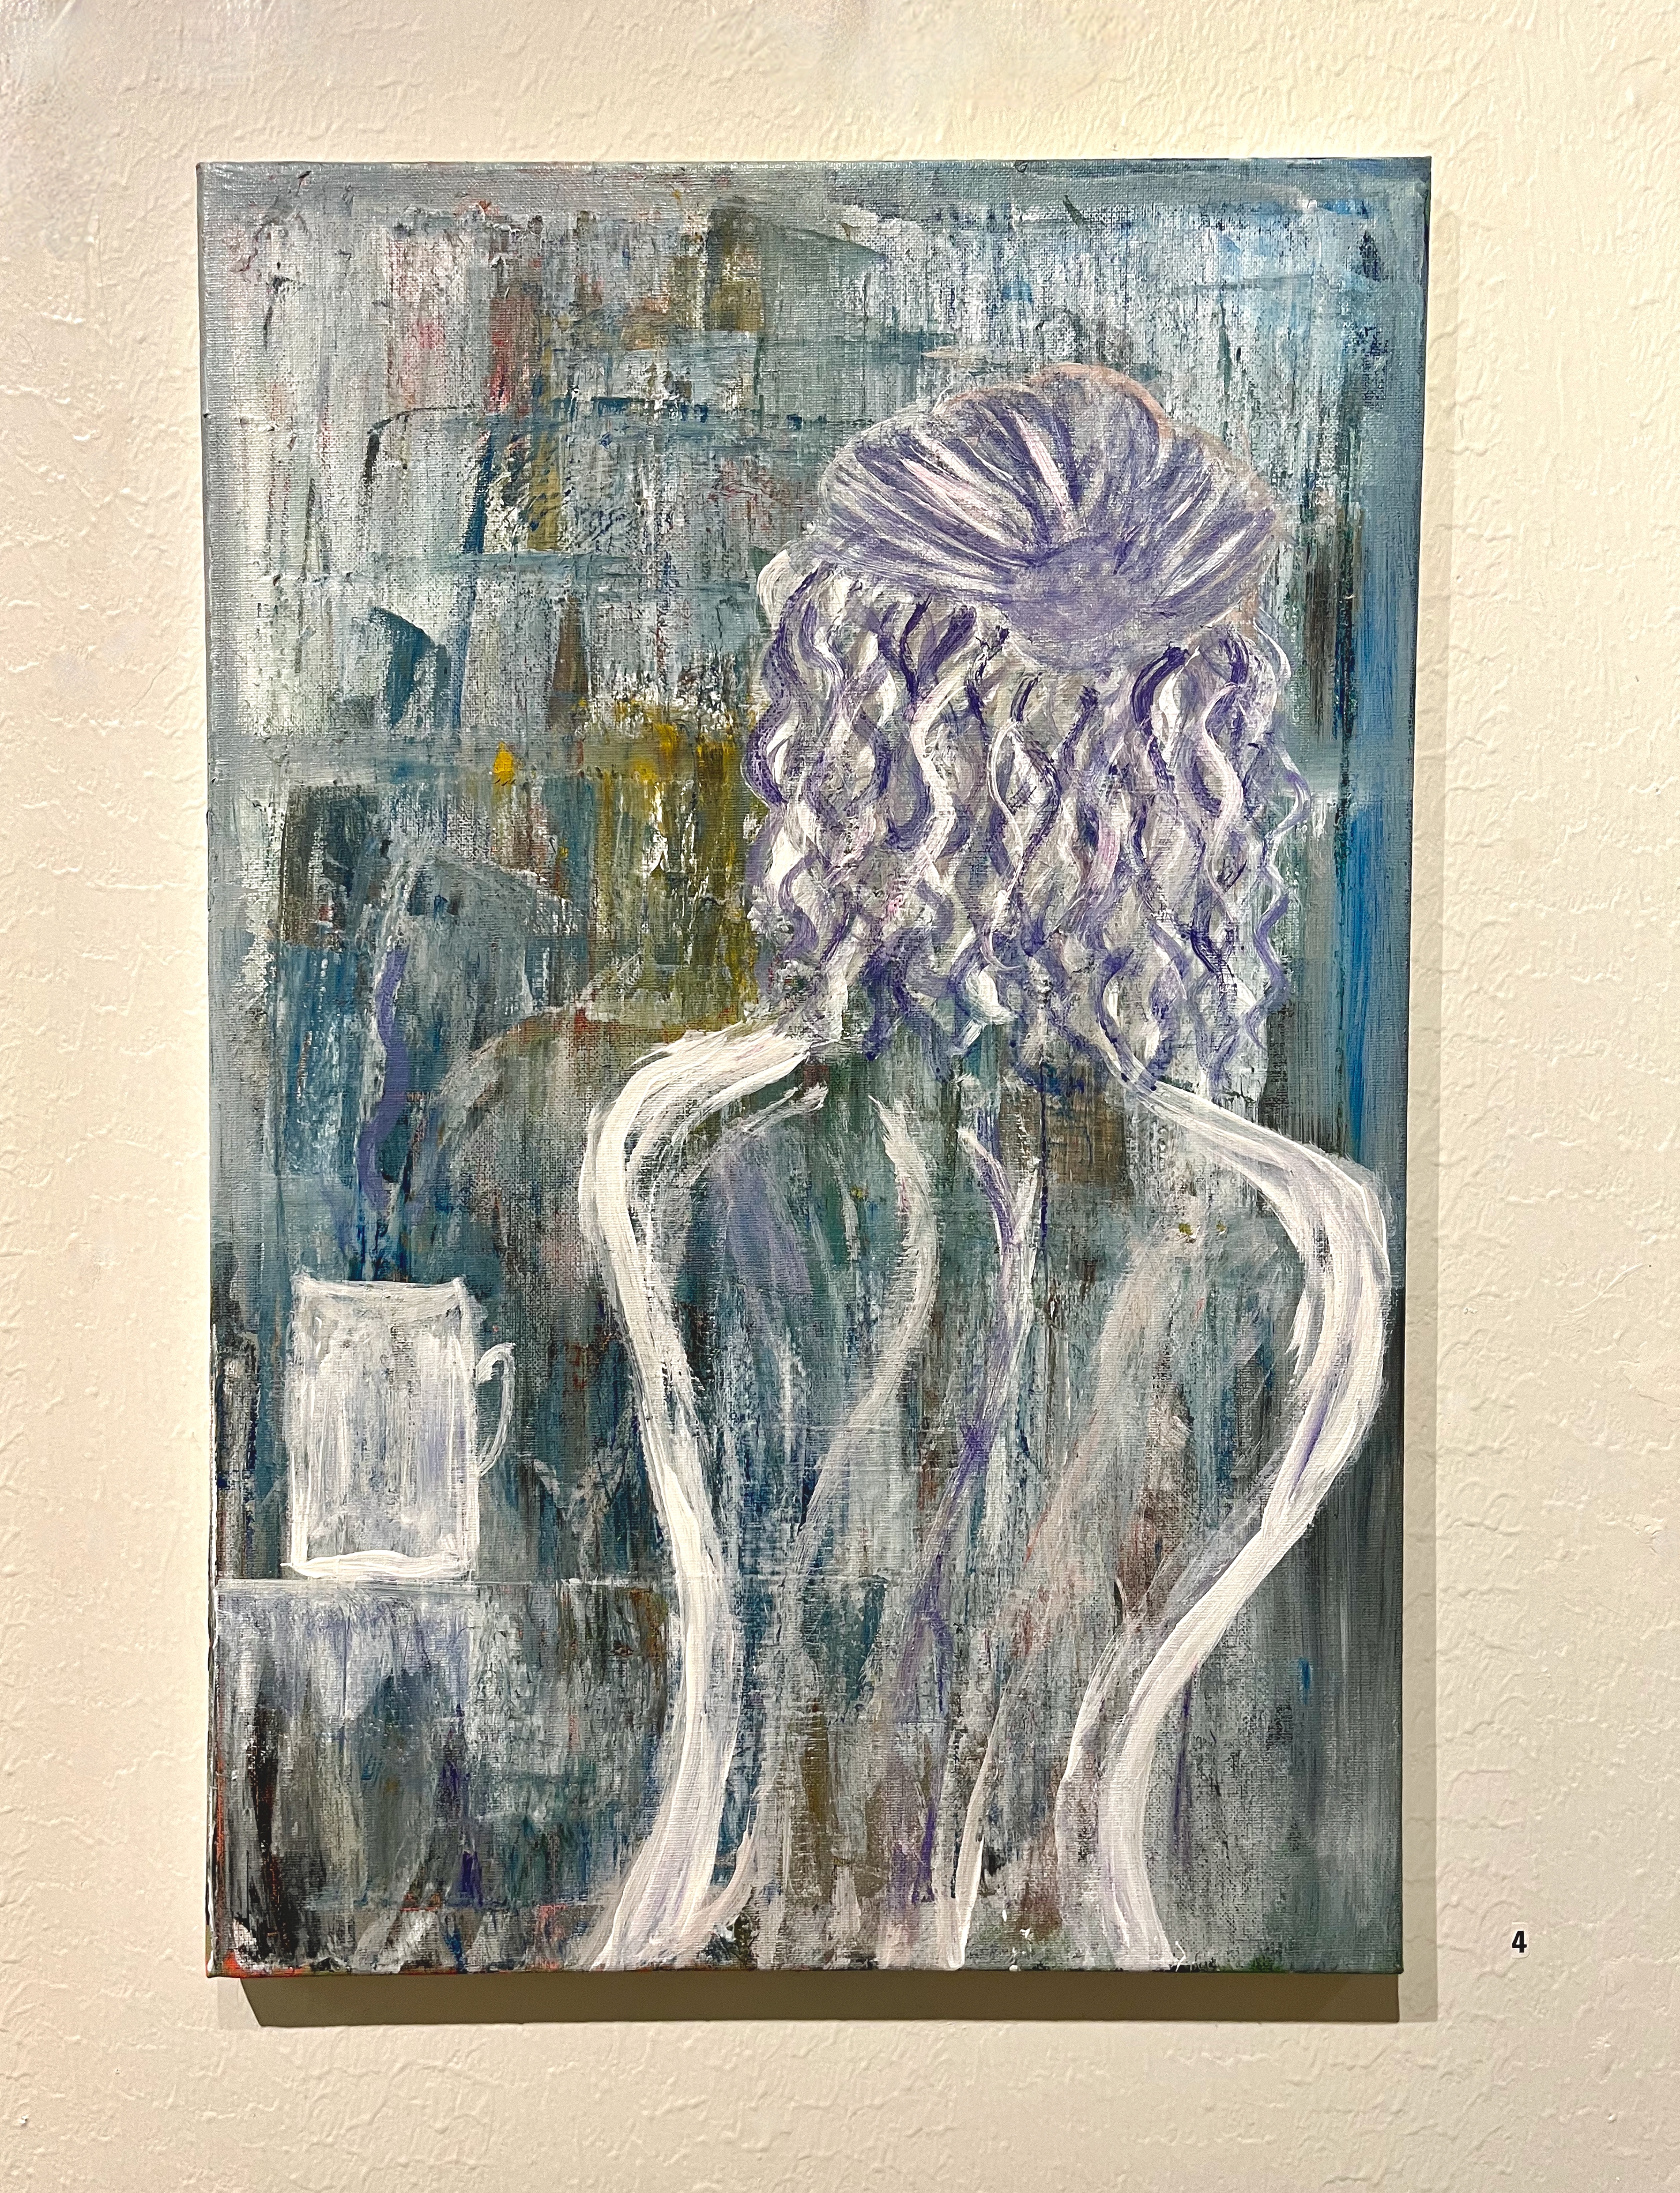 Kontour av en ung kvinnas rygg och huvud sett bakifrån. Kropskontouren är målat i vit och hennes lätt lockiga hår i vita och lila nyanser. Tell vänster står en mugg i vit. bakgrunden är en blandning av blå, lila och gula nyanser spm skapar en lugn känsla.